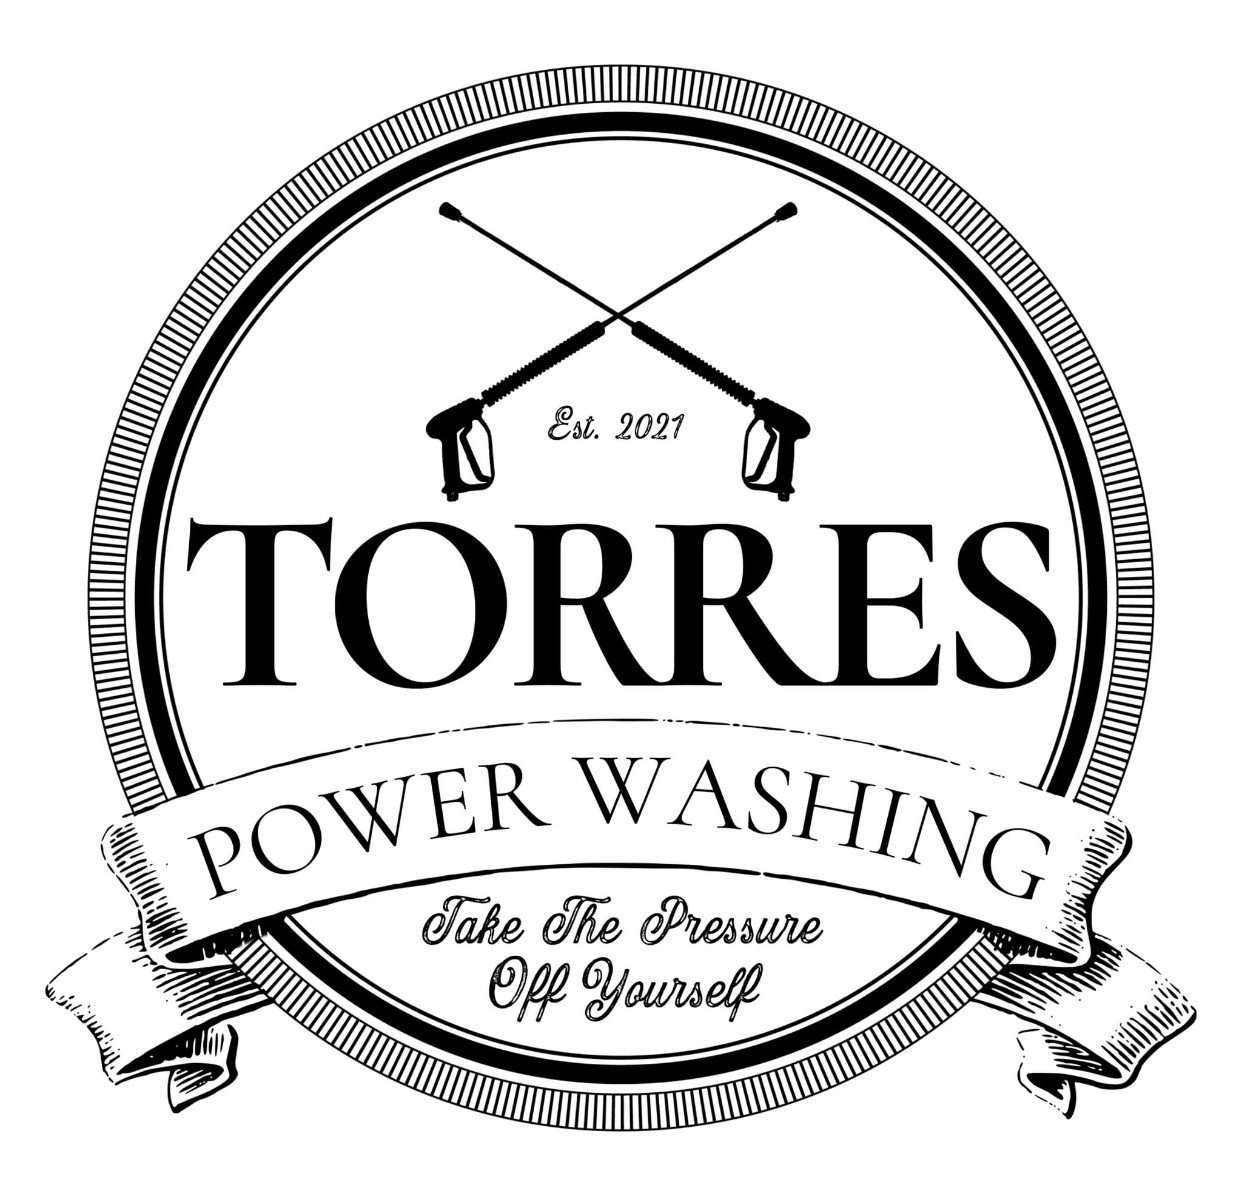 torres power washing logo final.jpg